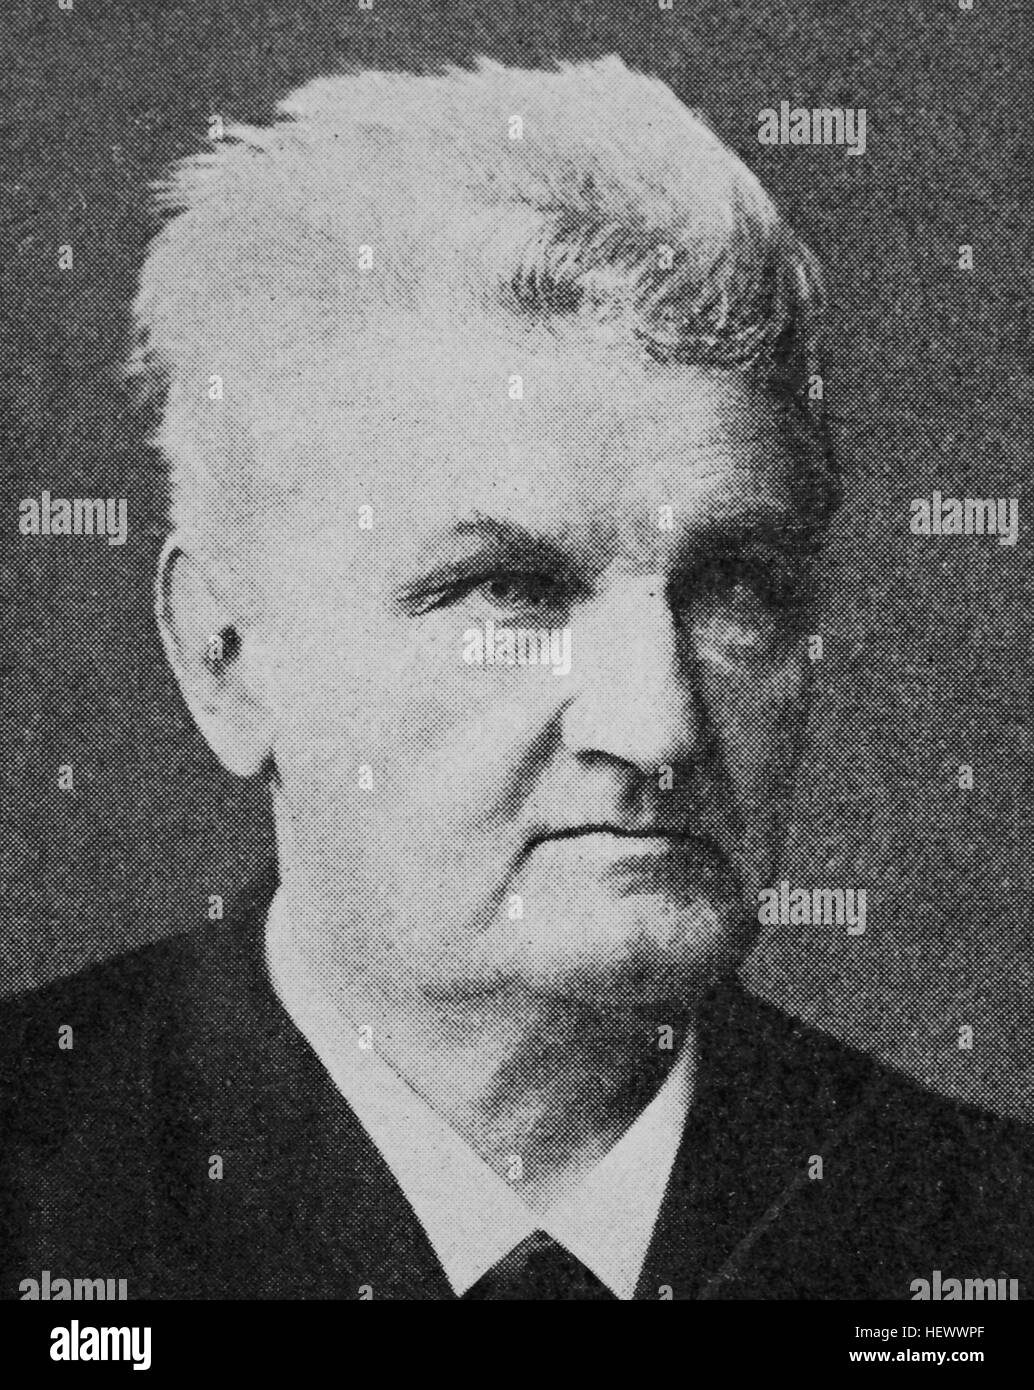 Wilhelm Nokk, 1832 - 1903, badischer Jurist und politican, picture from 1895, digital improved Stock Photo